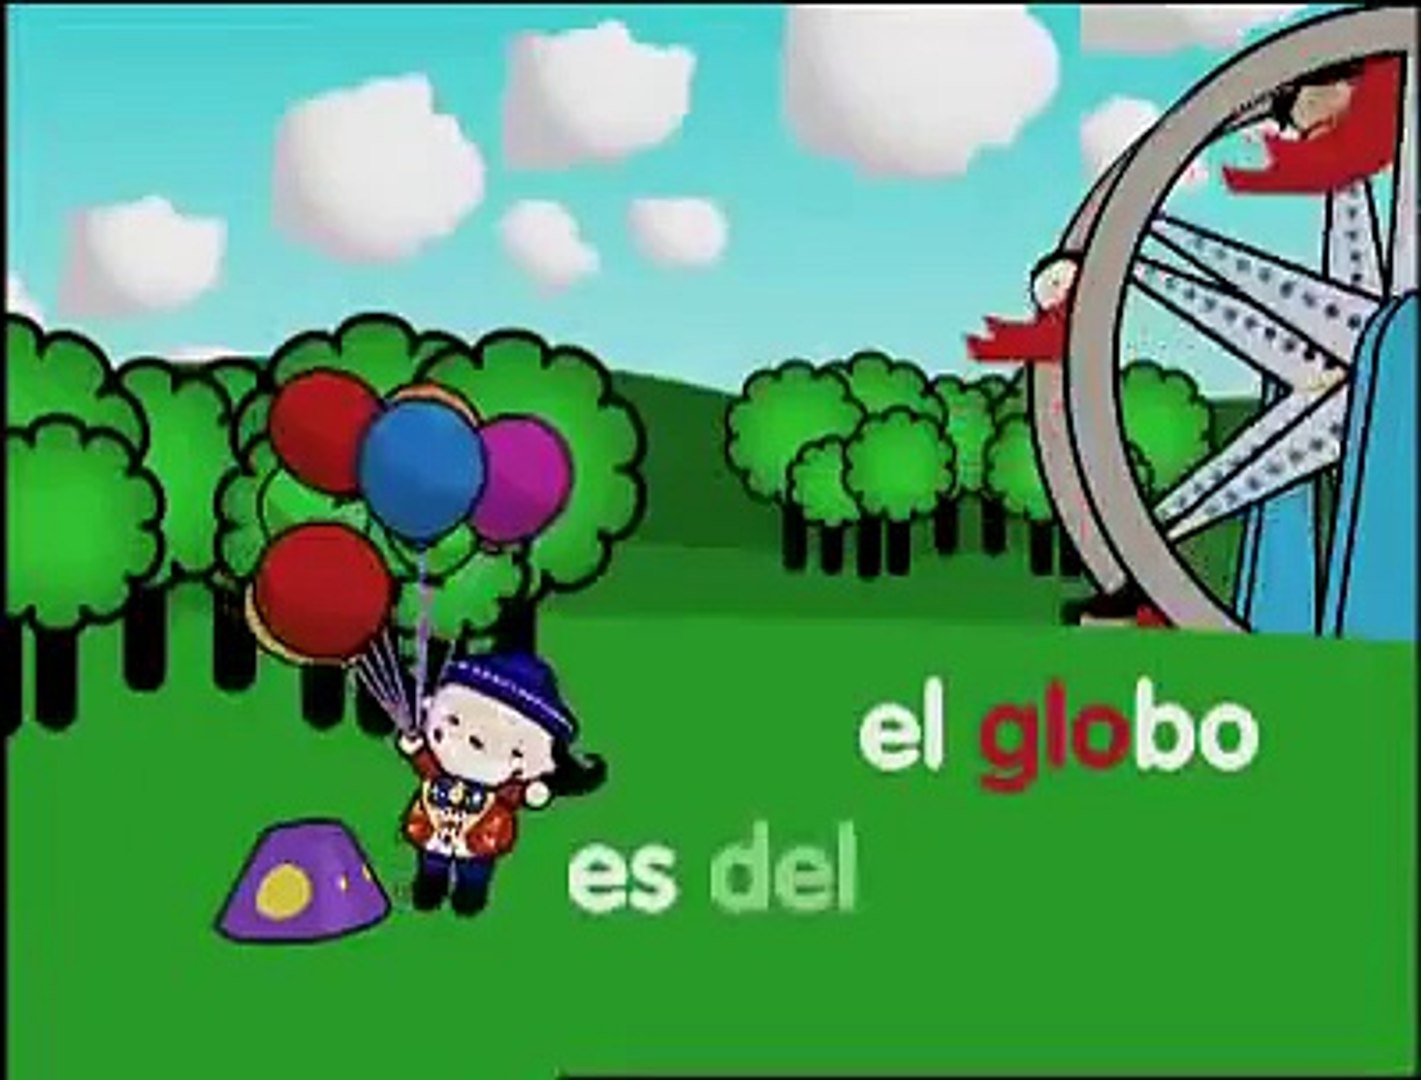 Doki - Globo gla gle gli glo glu - Sílabas - video Dailymotion